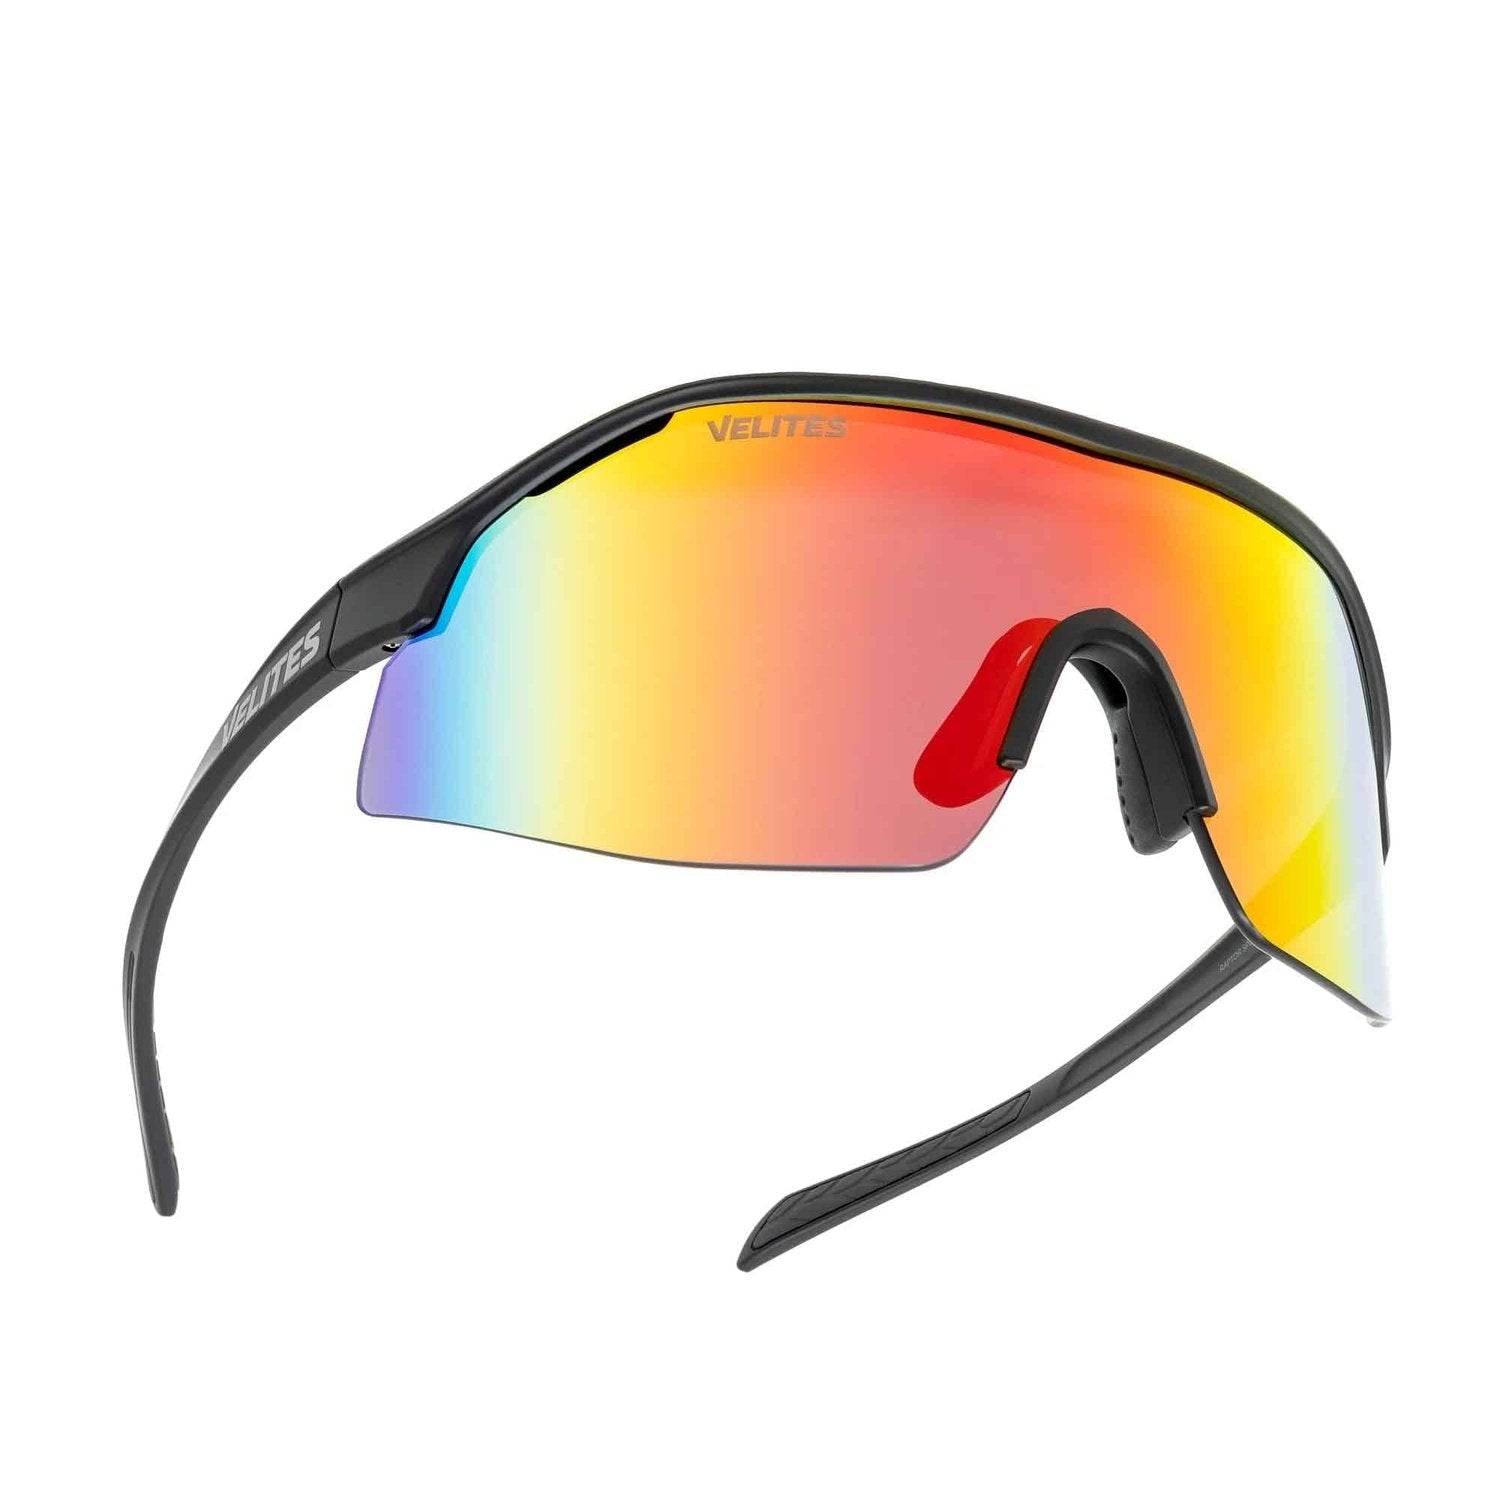 Velites Sonnenbrille "Raptor Sport" Schwarz/Orange kaufen bei HighPowered.ch